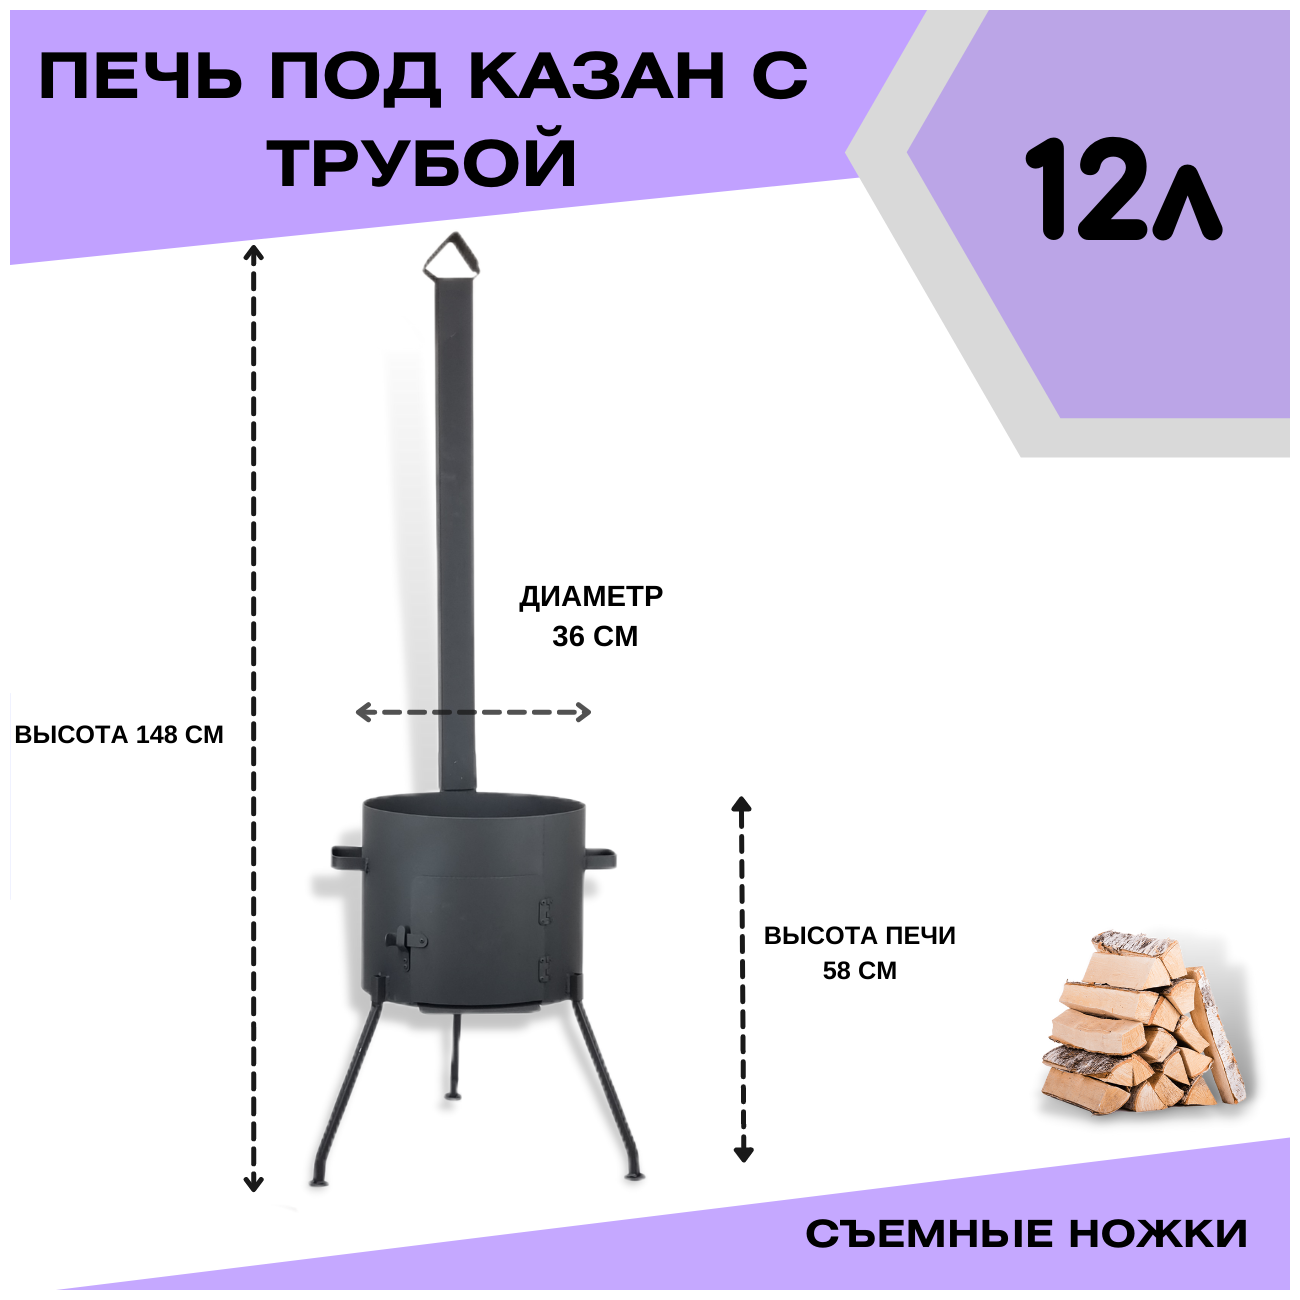 Печка с трубой под казан 12 литров и съемными ножками Svargan - фотография № 2